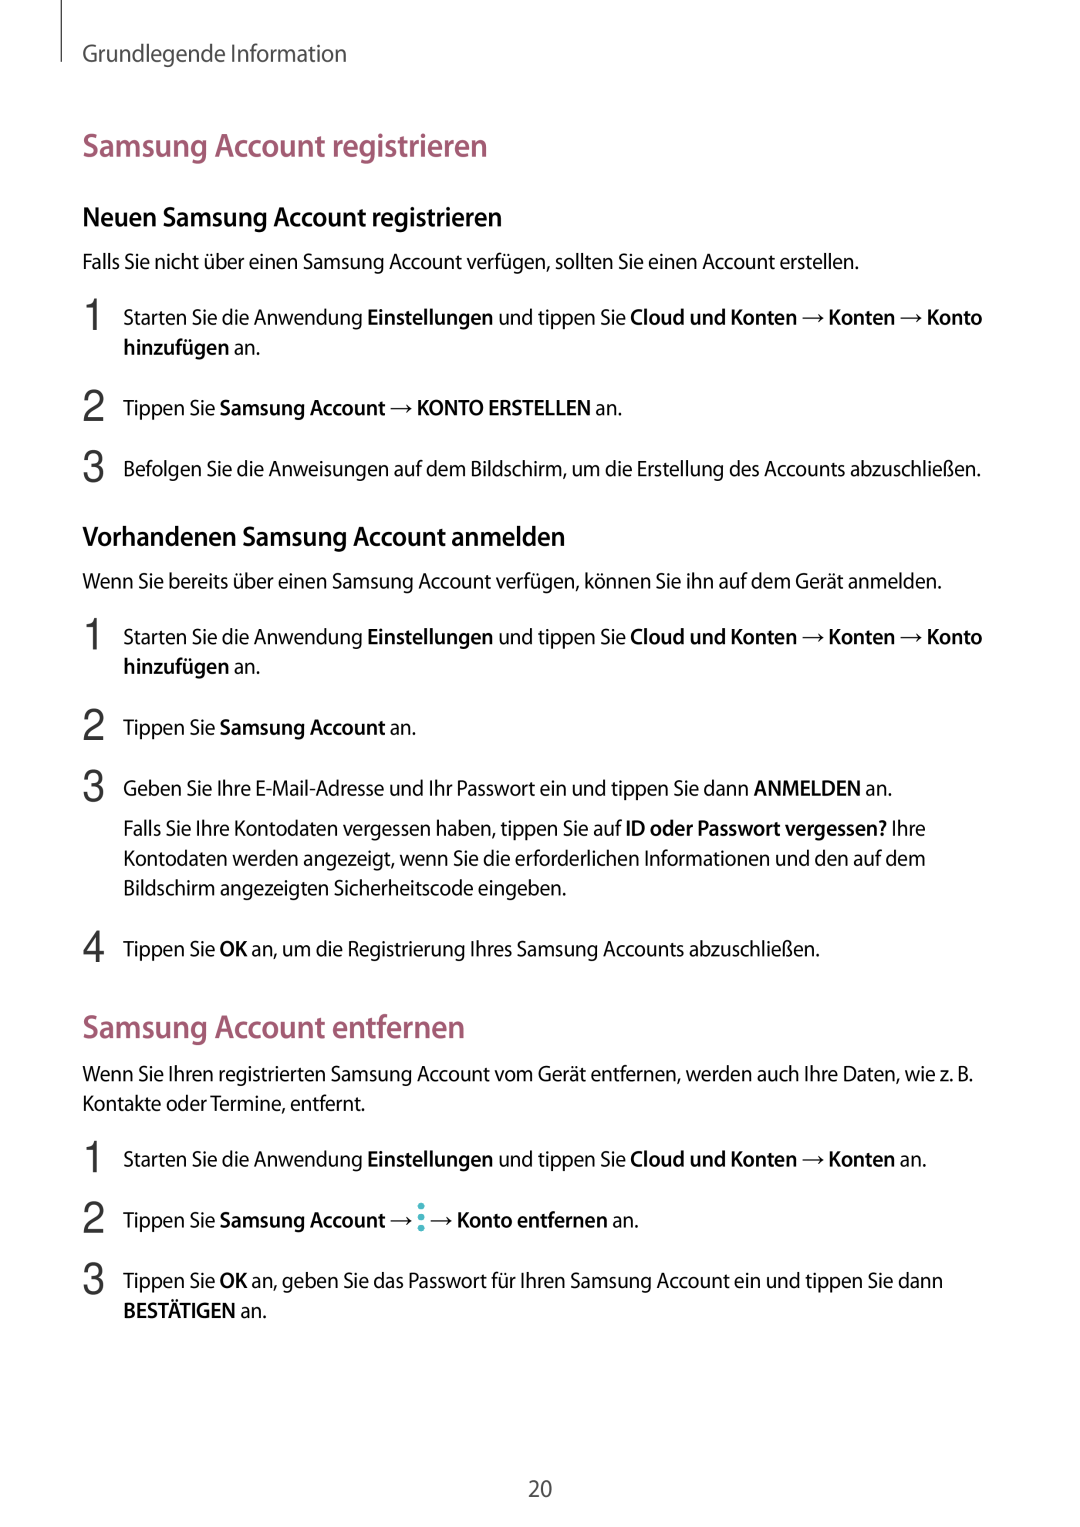 Samsung SM-T555NZKAATO, SM-T555NZKAAUT Samsung Account registrieren, Samsung Account entfernen, Grundlegende Information 